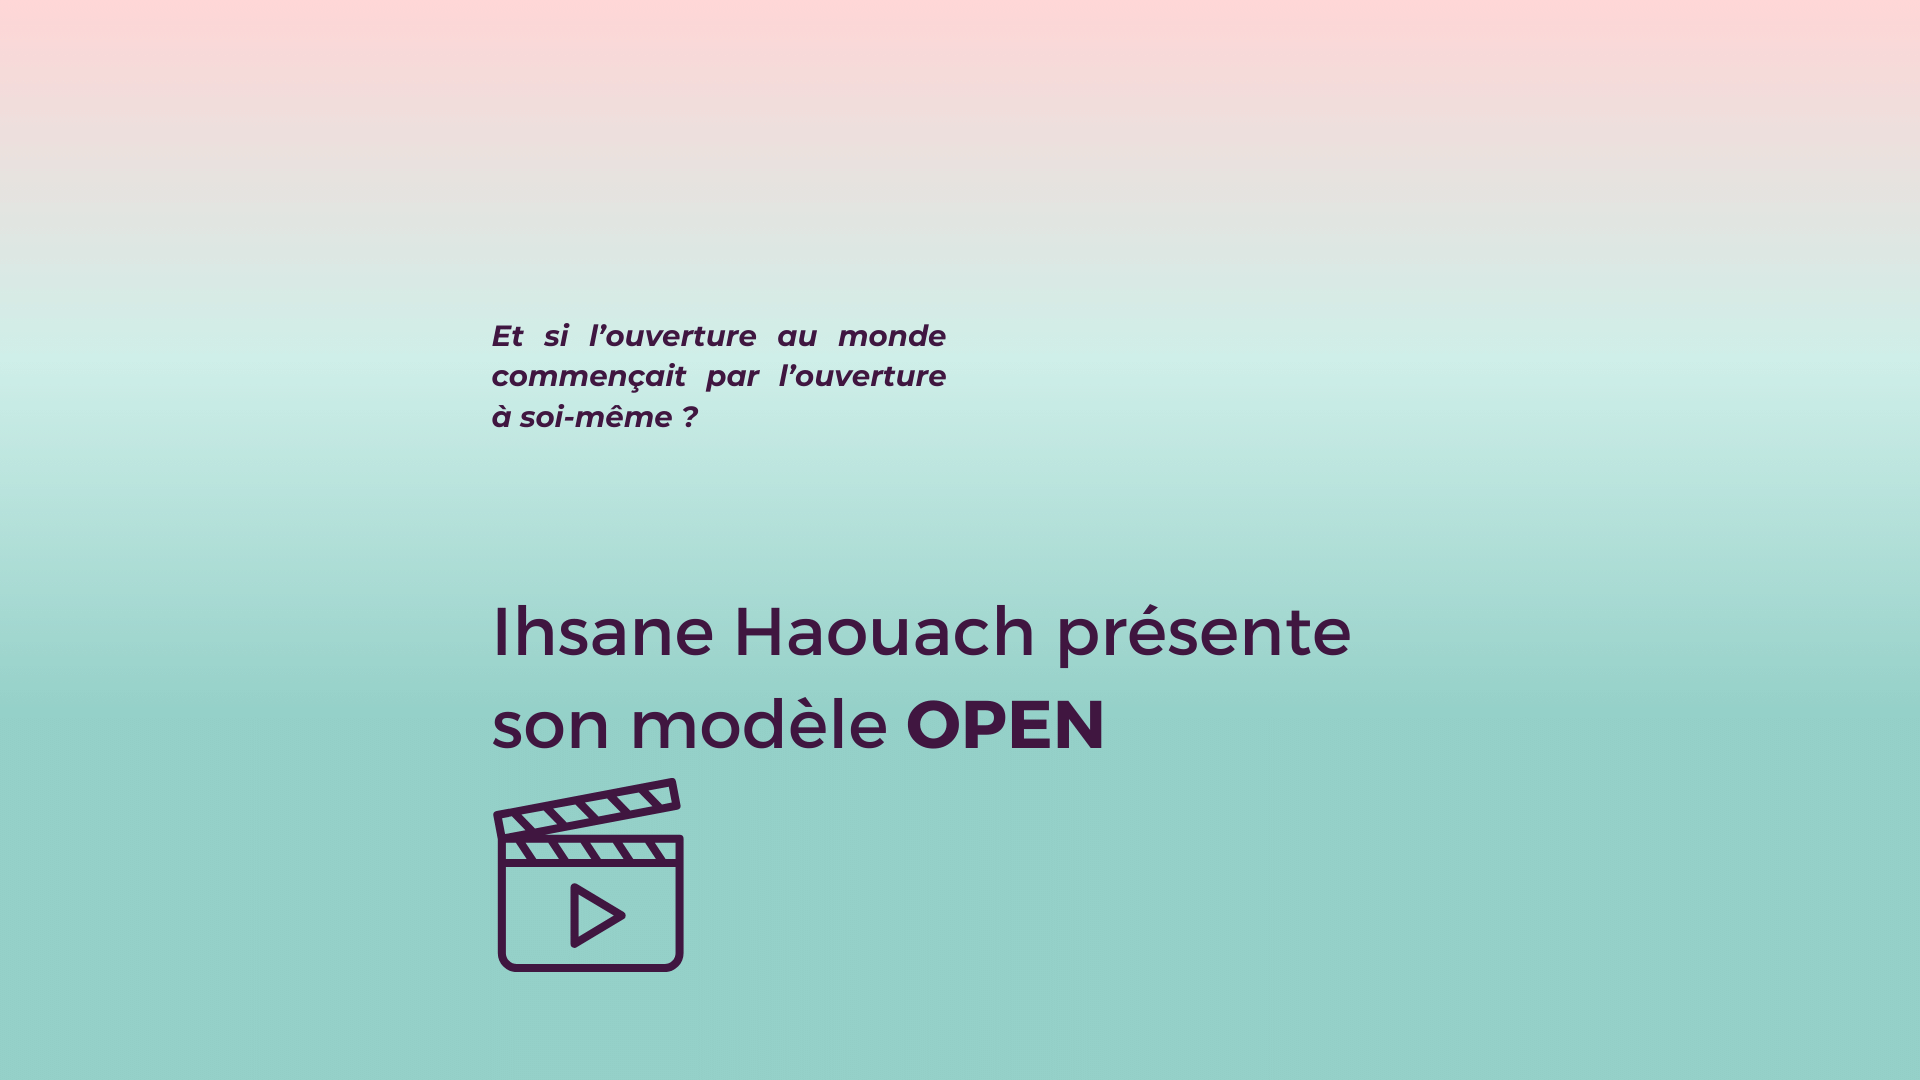 OPEN, le modèle d’Ihsane Haouach en vidéo